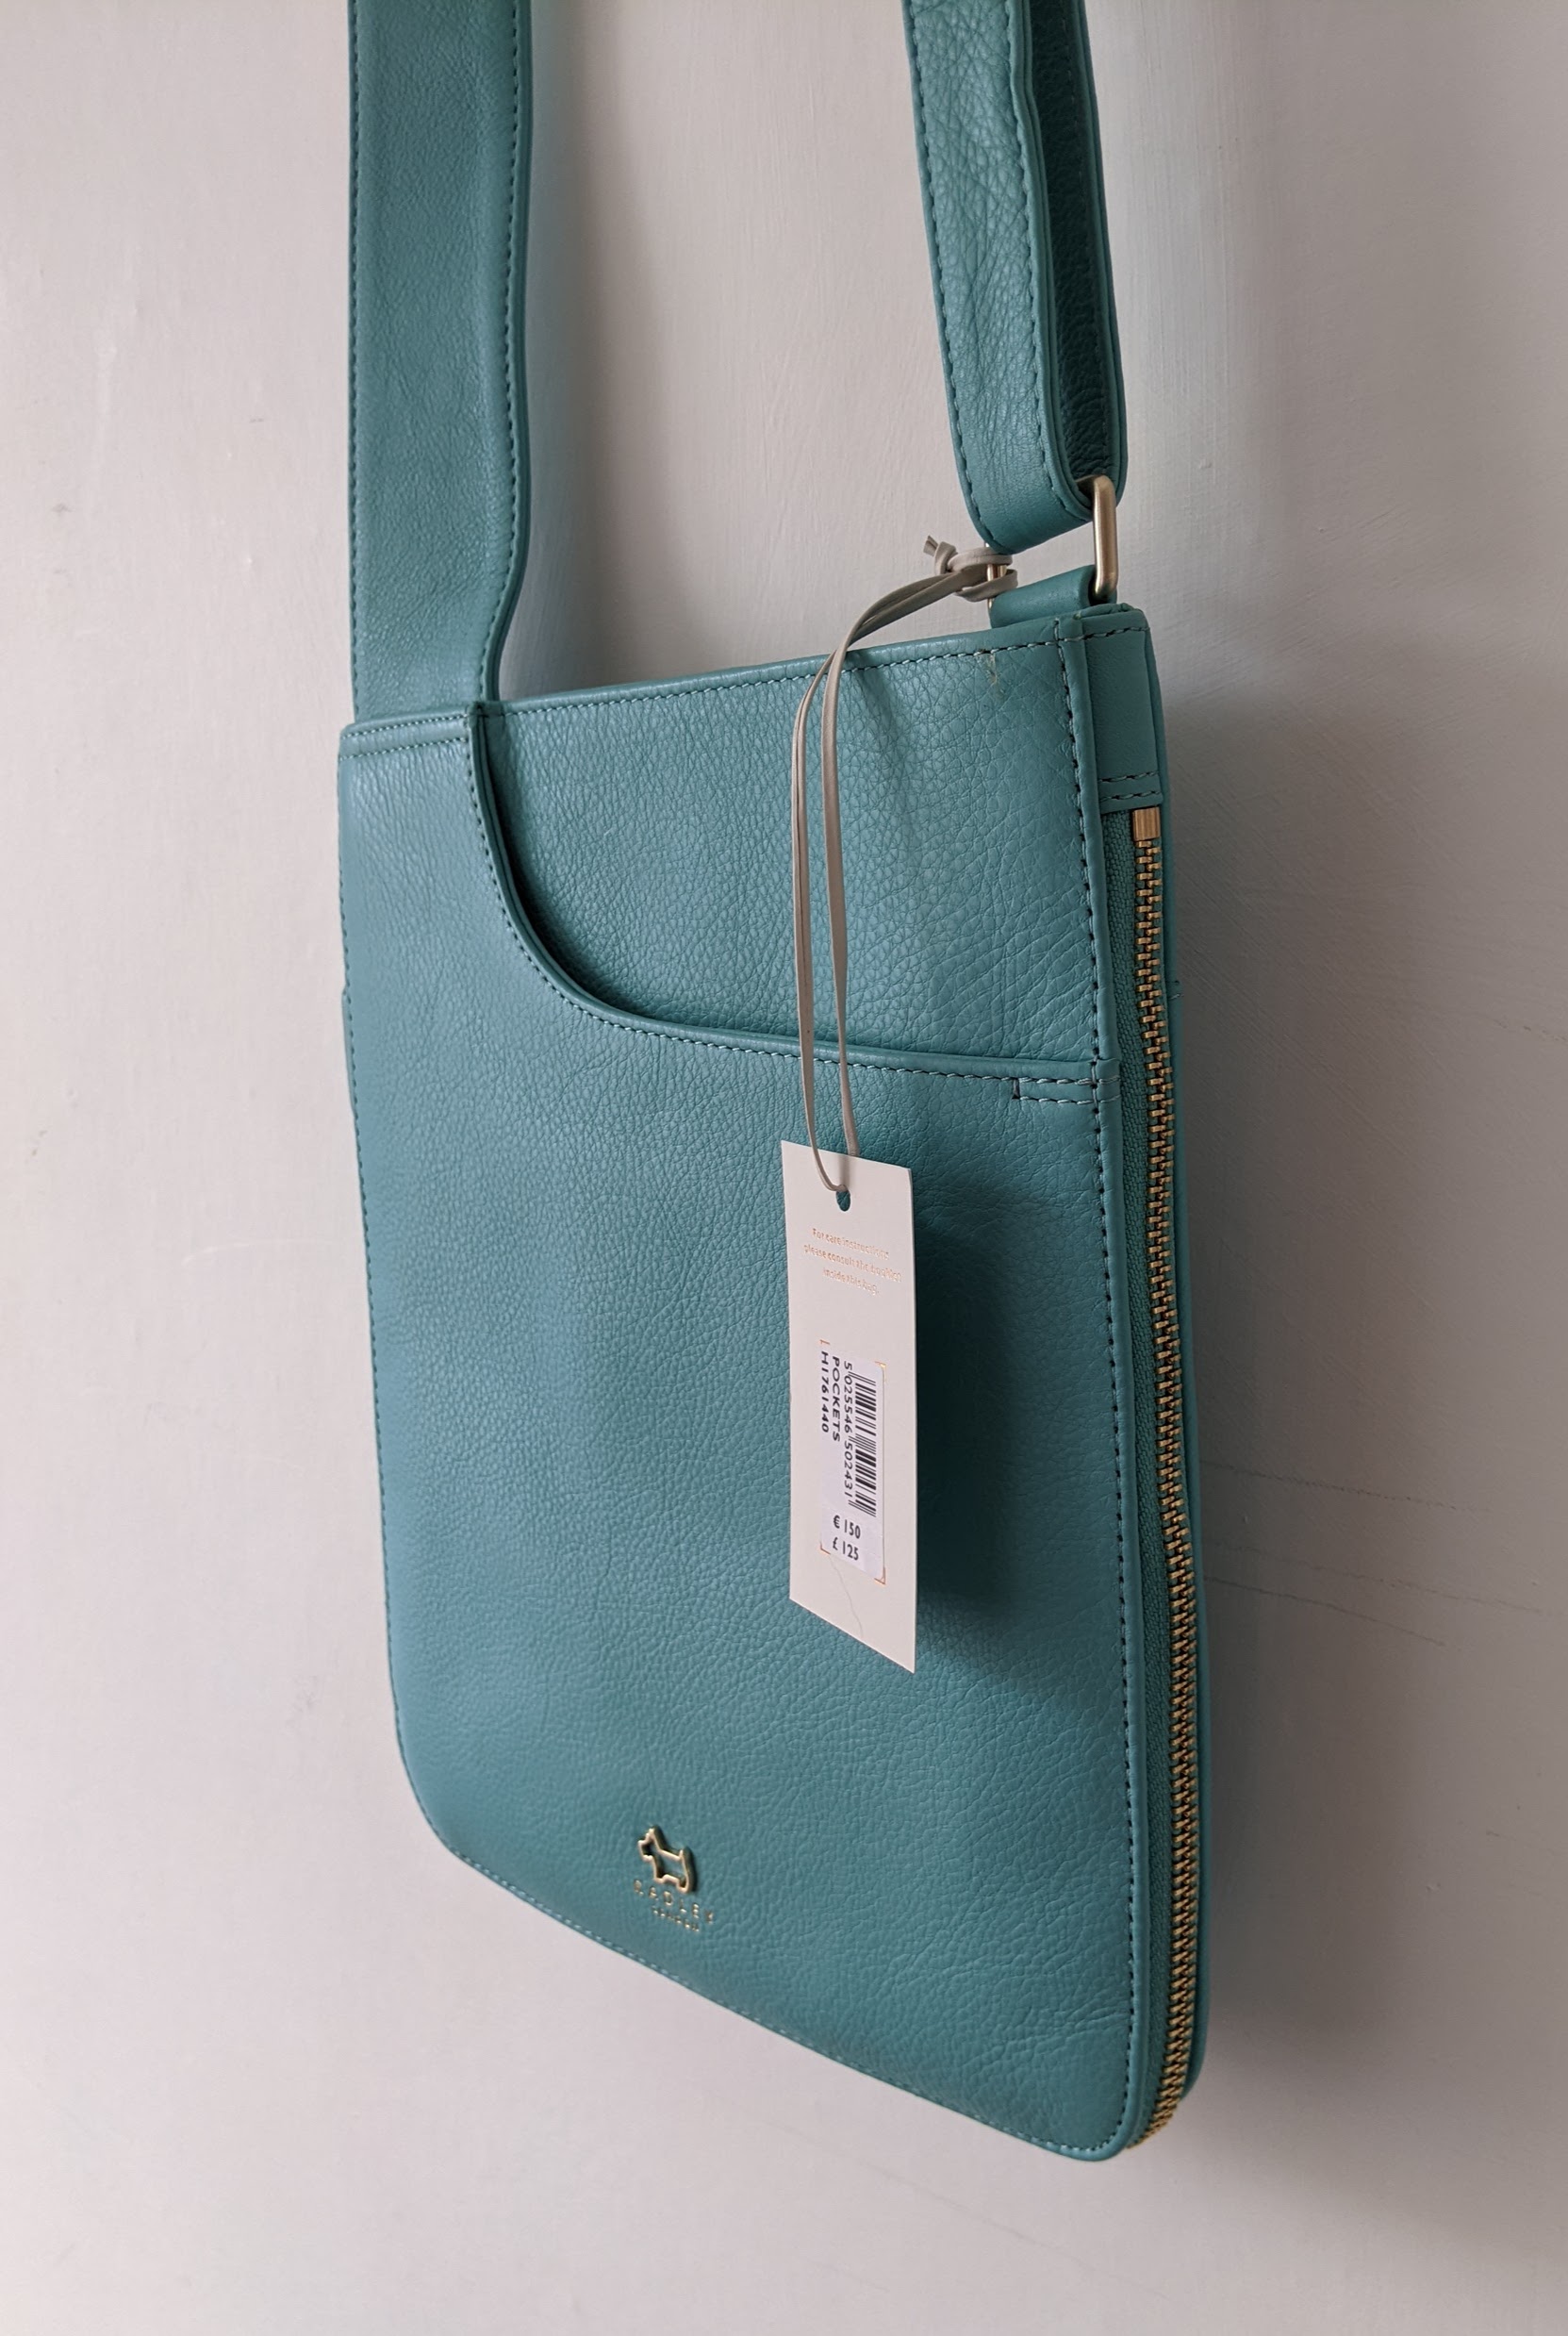 Radley Turquoise Blue Bag (side)